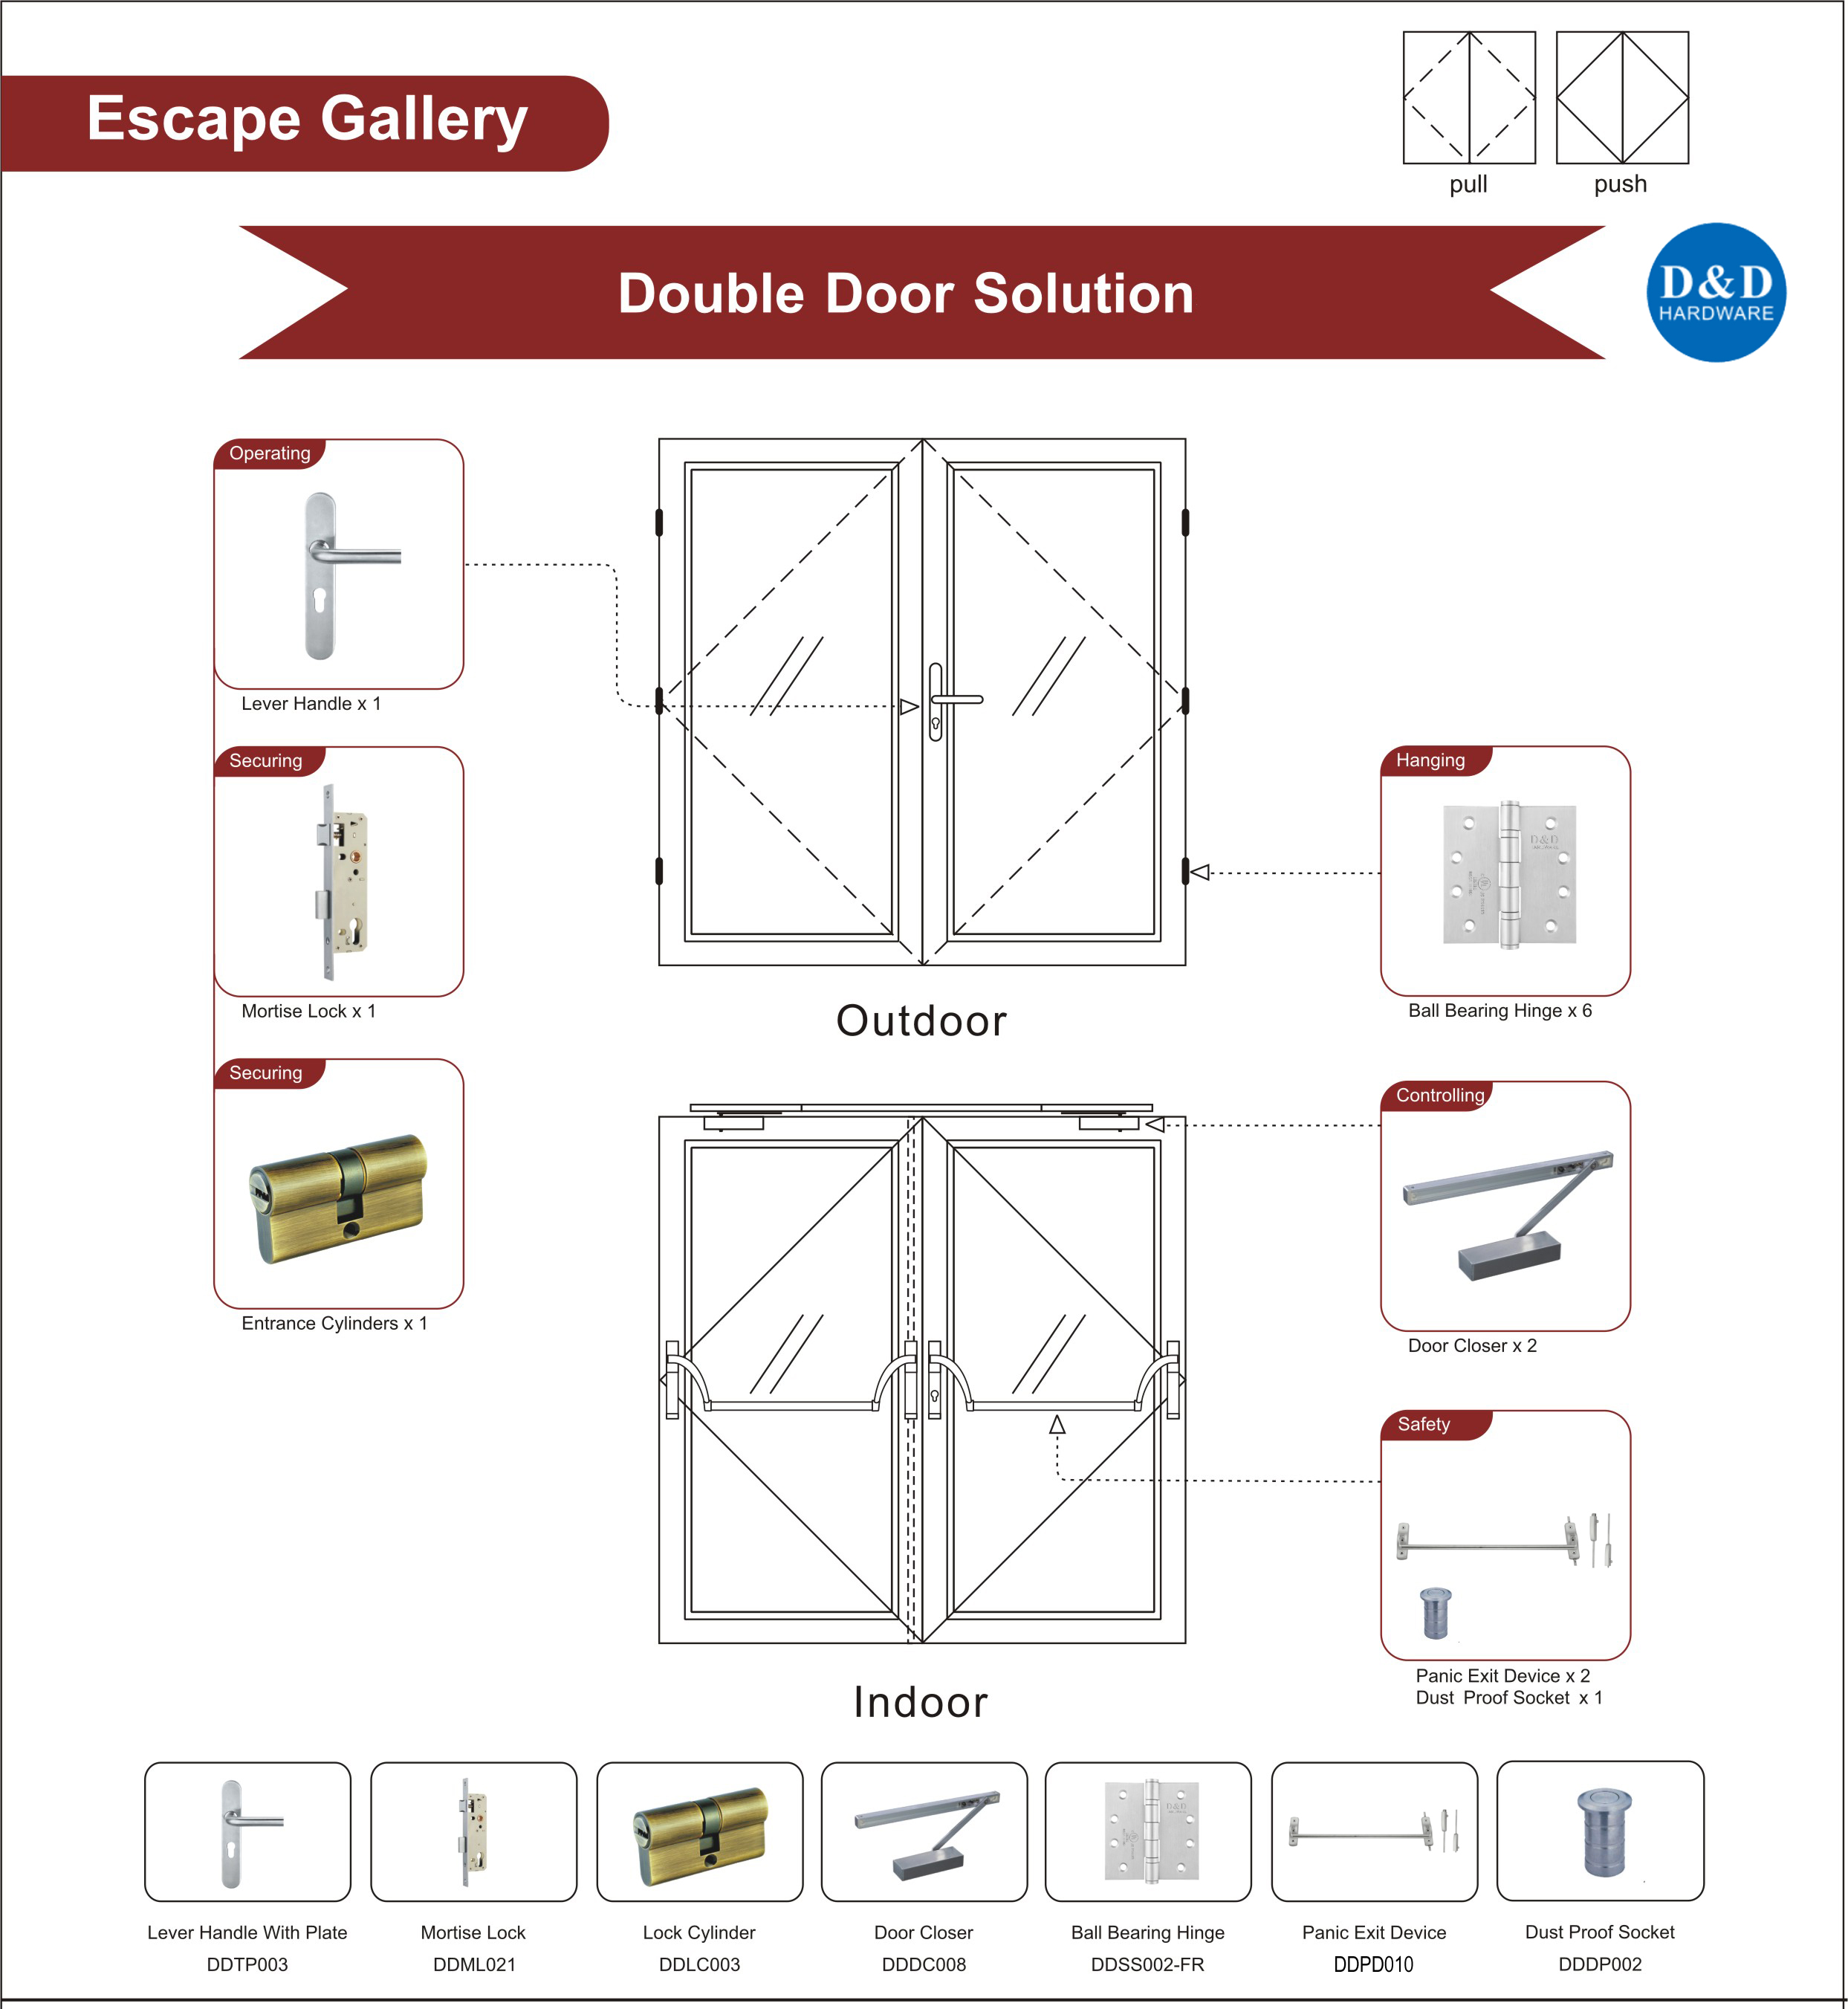 Escape Gallery Steel Door Solution-D&D Hardware 